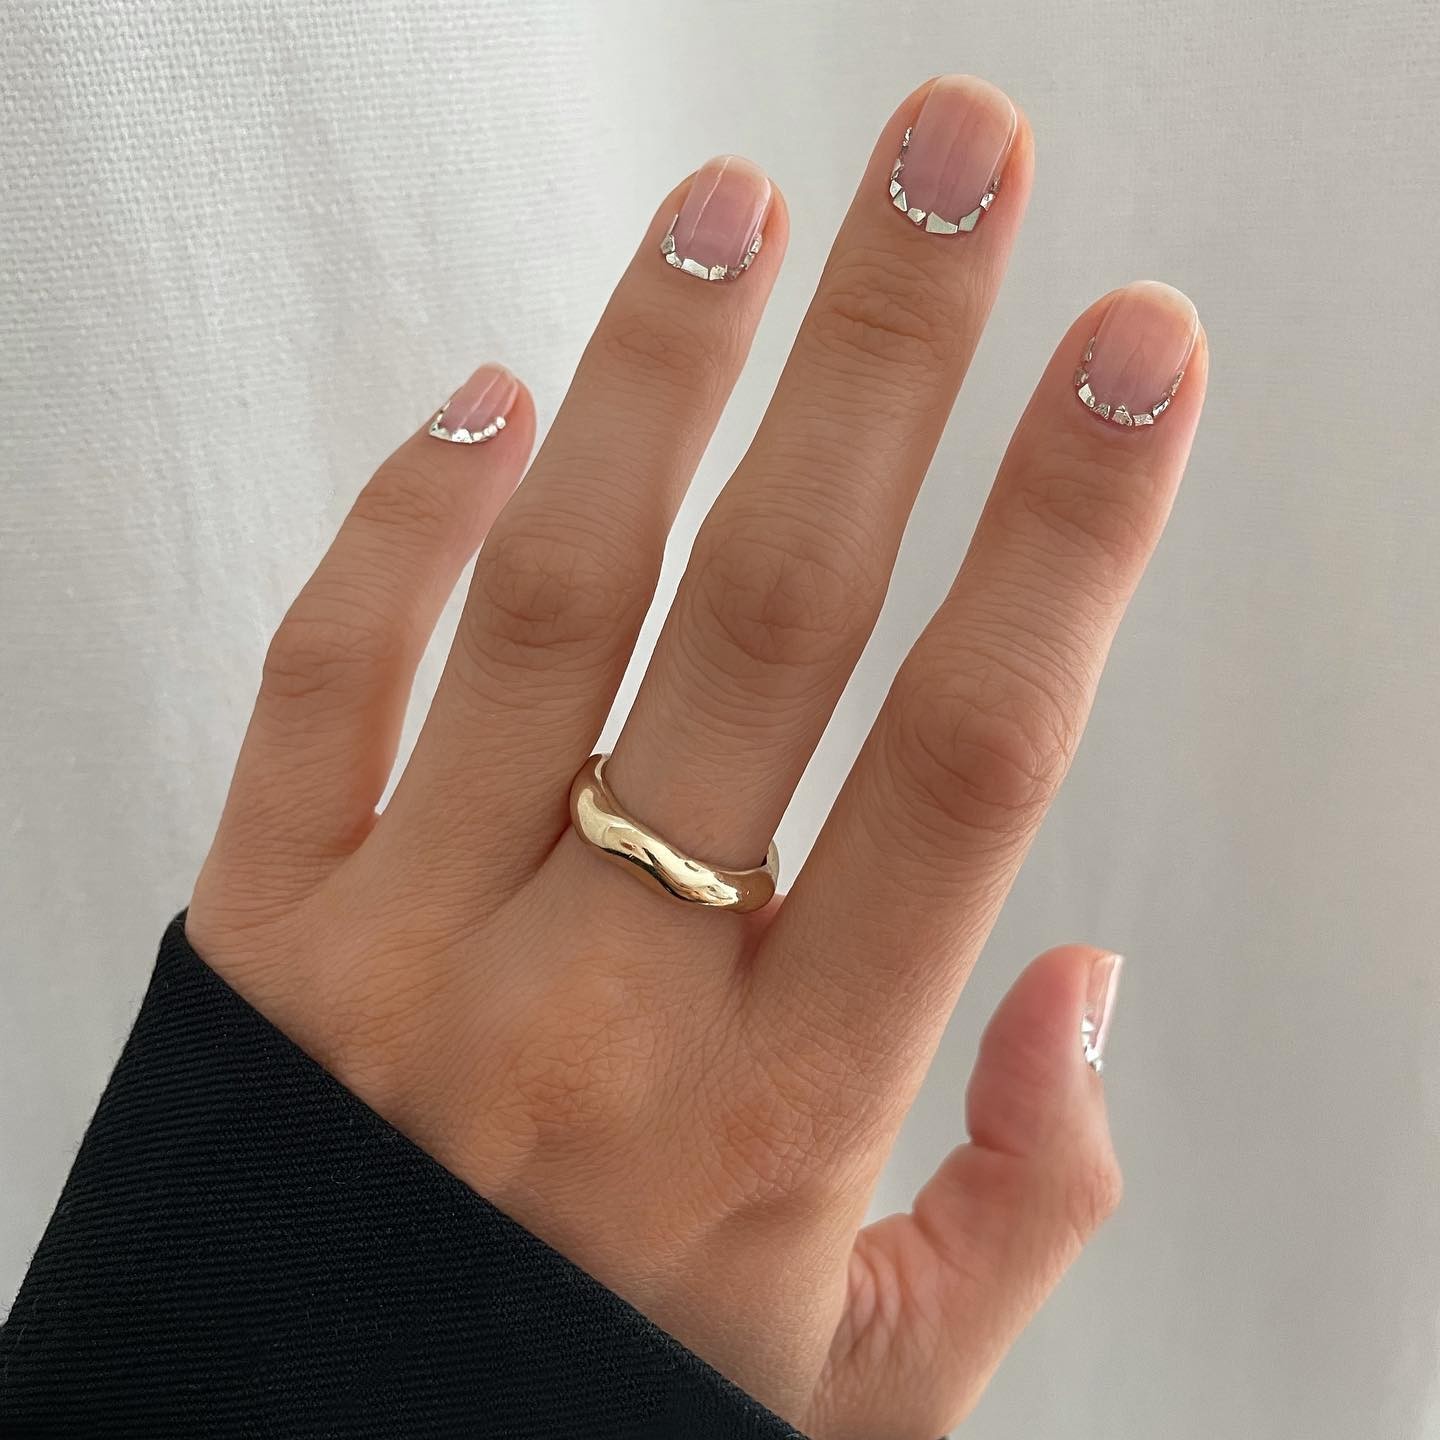 Inspire-se nas melhores nail arts de casamento (Foto: Instagram)